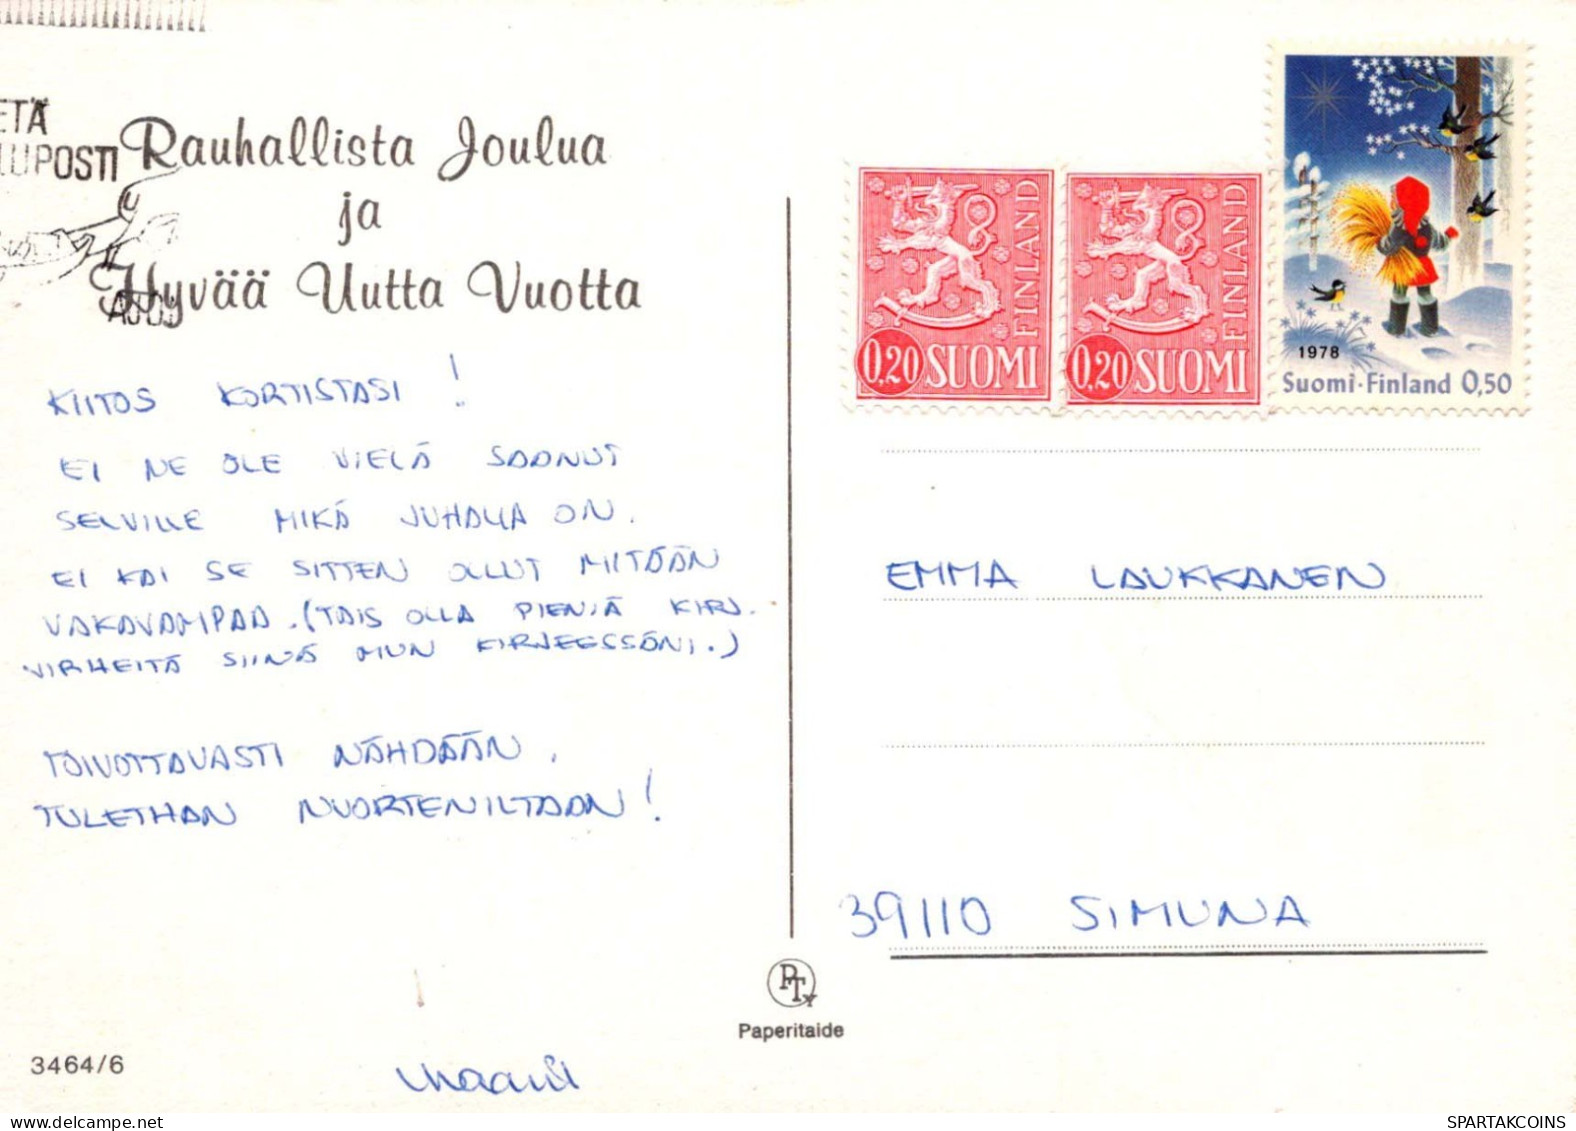 Jungfrau Maria Madonna Jesuskind Weihnachten Religion Vintage Ansichtskarte Postkarte CPSM #PBB801.A - Vierge Marie & Madones